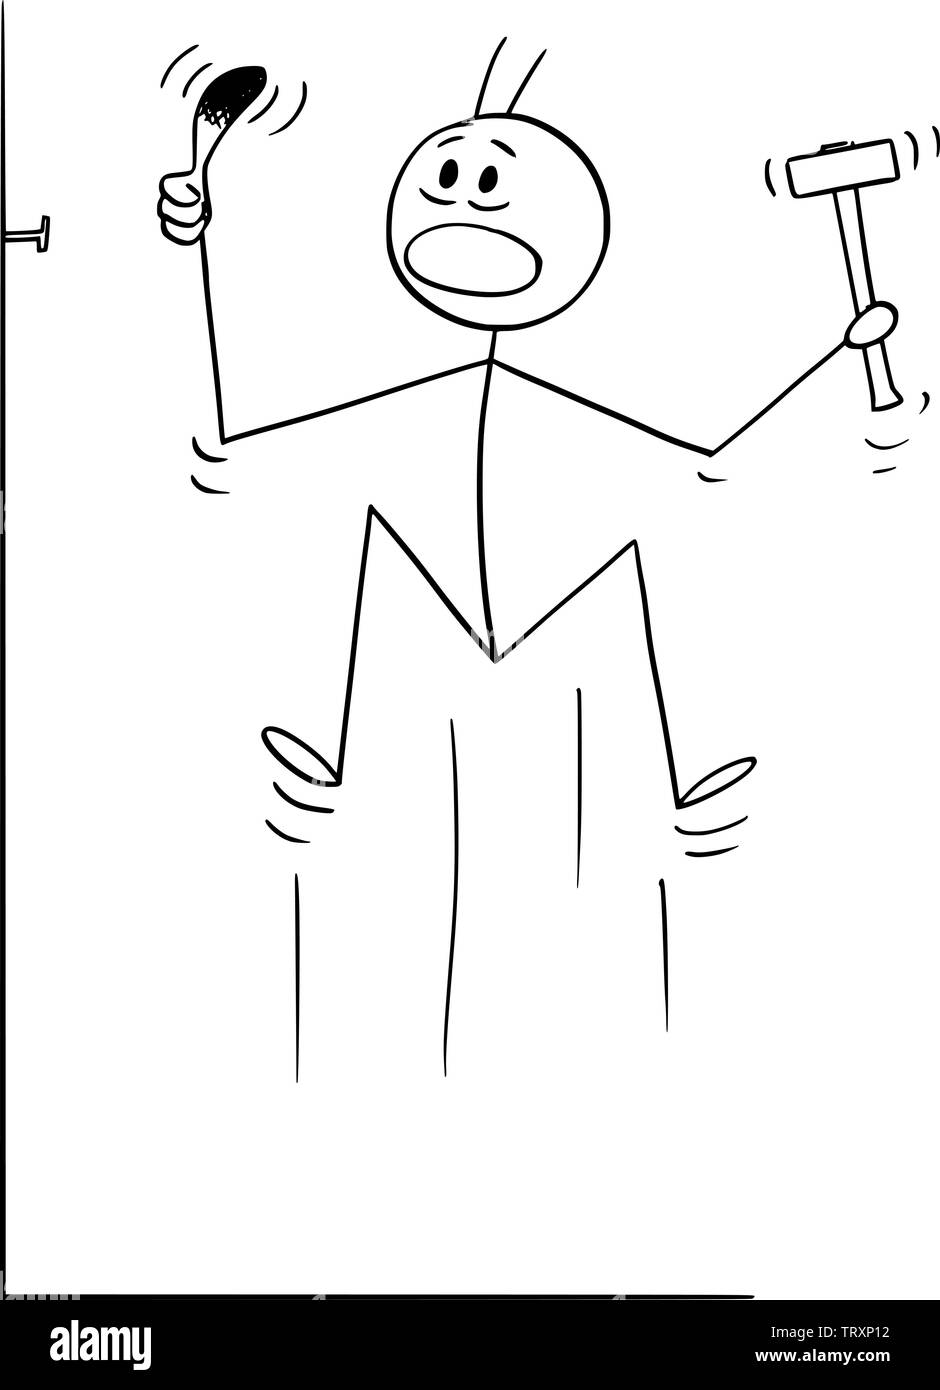 Vector cartoon stick figure dessin illustration conceptuelle de l'homme qui est touché ou le pouce tout en martelant, conduire ou frapper un clou. Illustration de Vecteur